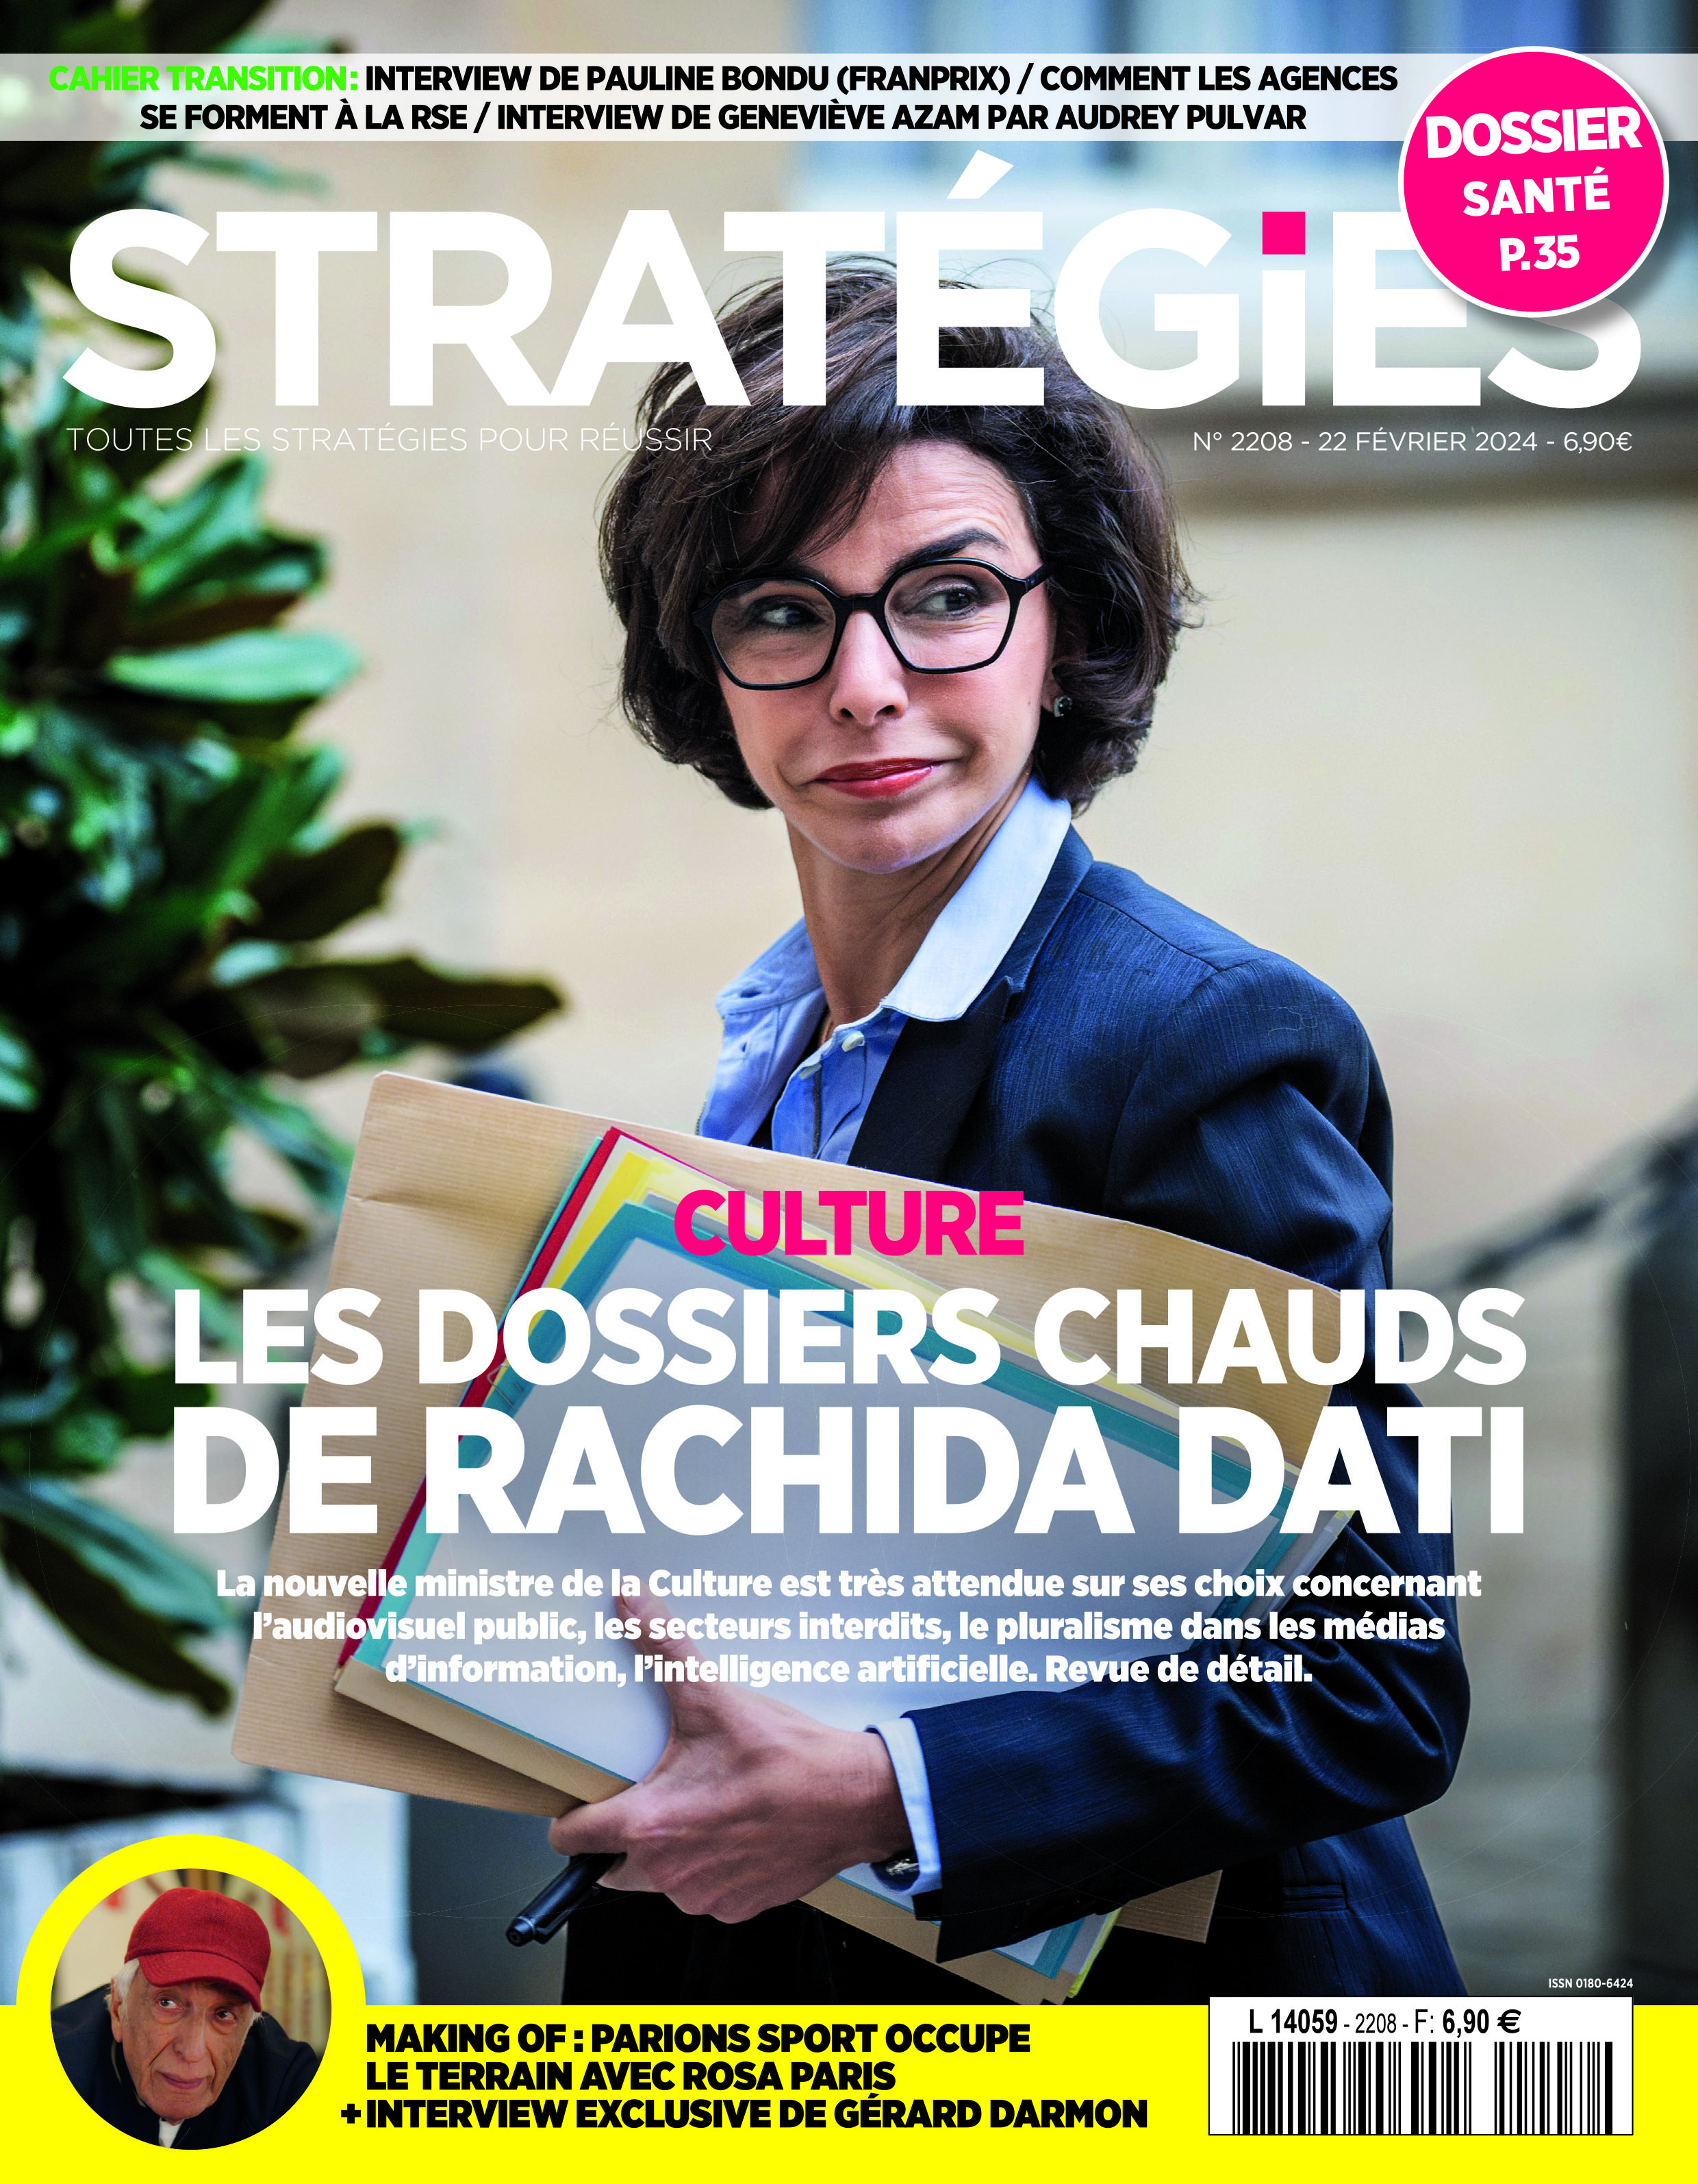 Couverture du magazine Stratégies n°2208 : " Les dossiers chauds de Rachida Dati au ministère de la Culture"